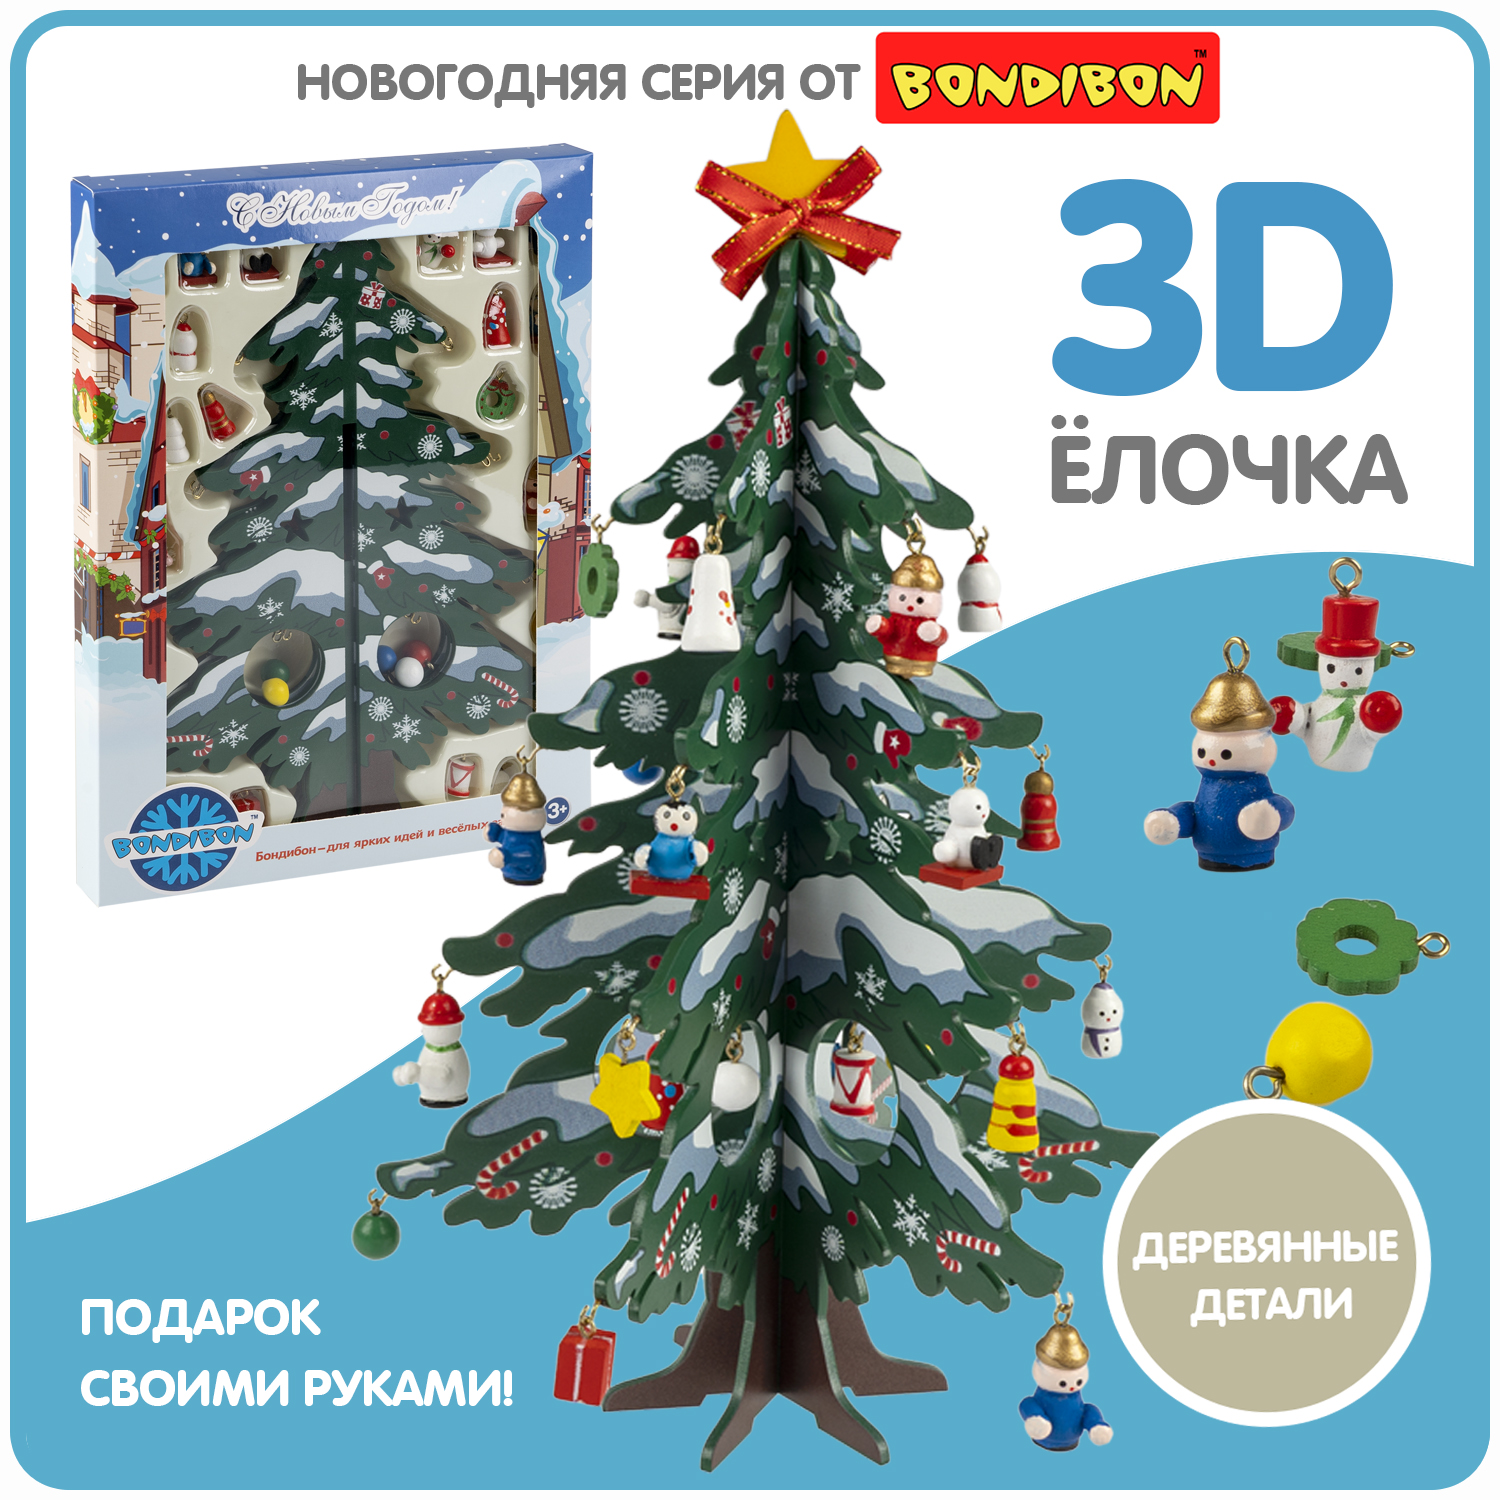 Новогодний набор Bondibon. Деревянная ёлочка 3D с игрушками, высота 28.5см елочка 3d конструктор gc famiscom деревянная настольная с игрушками 24 см